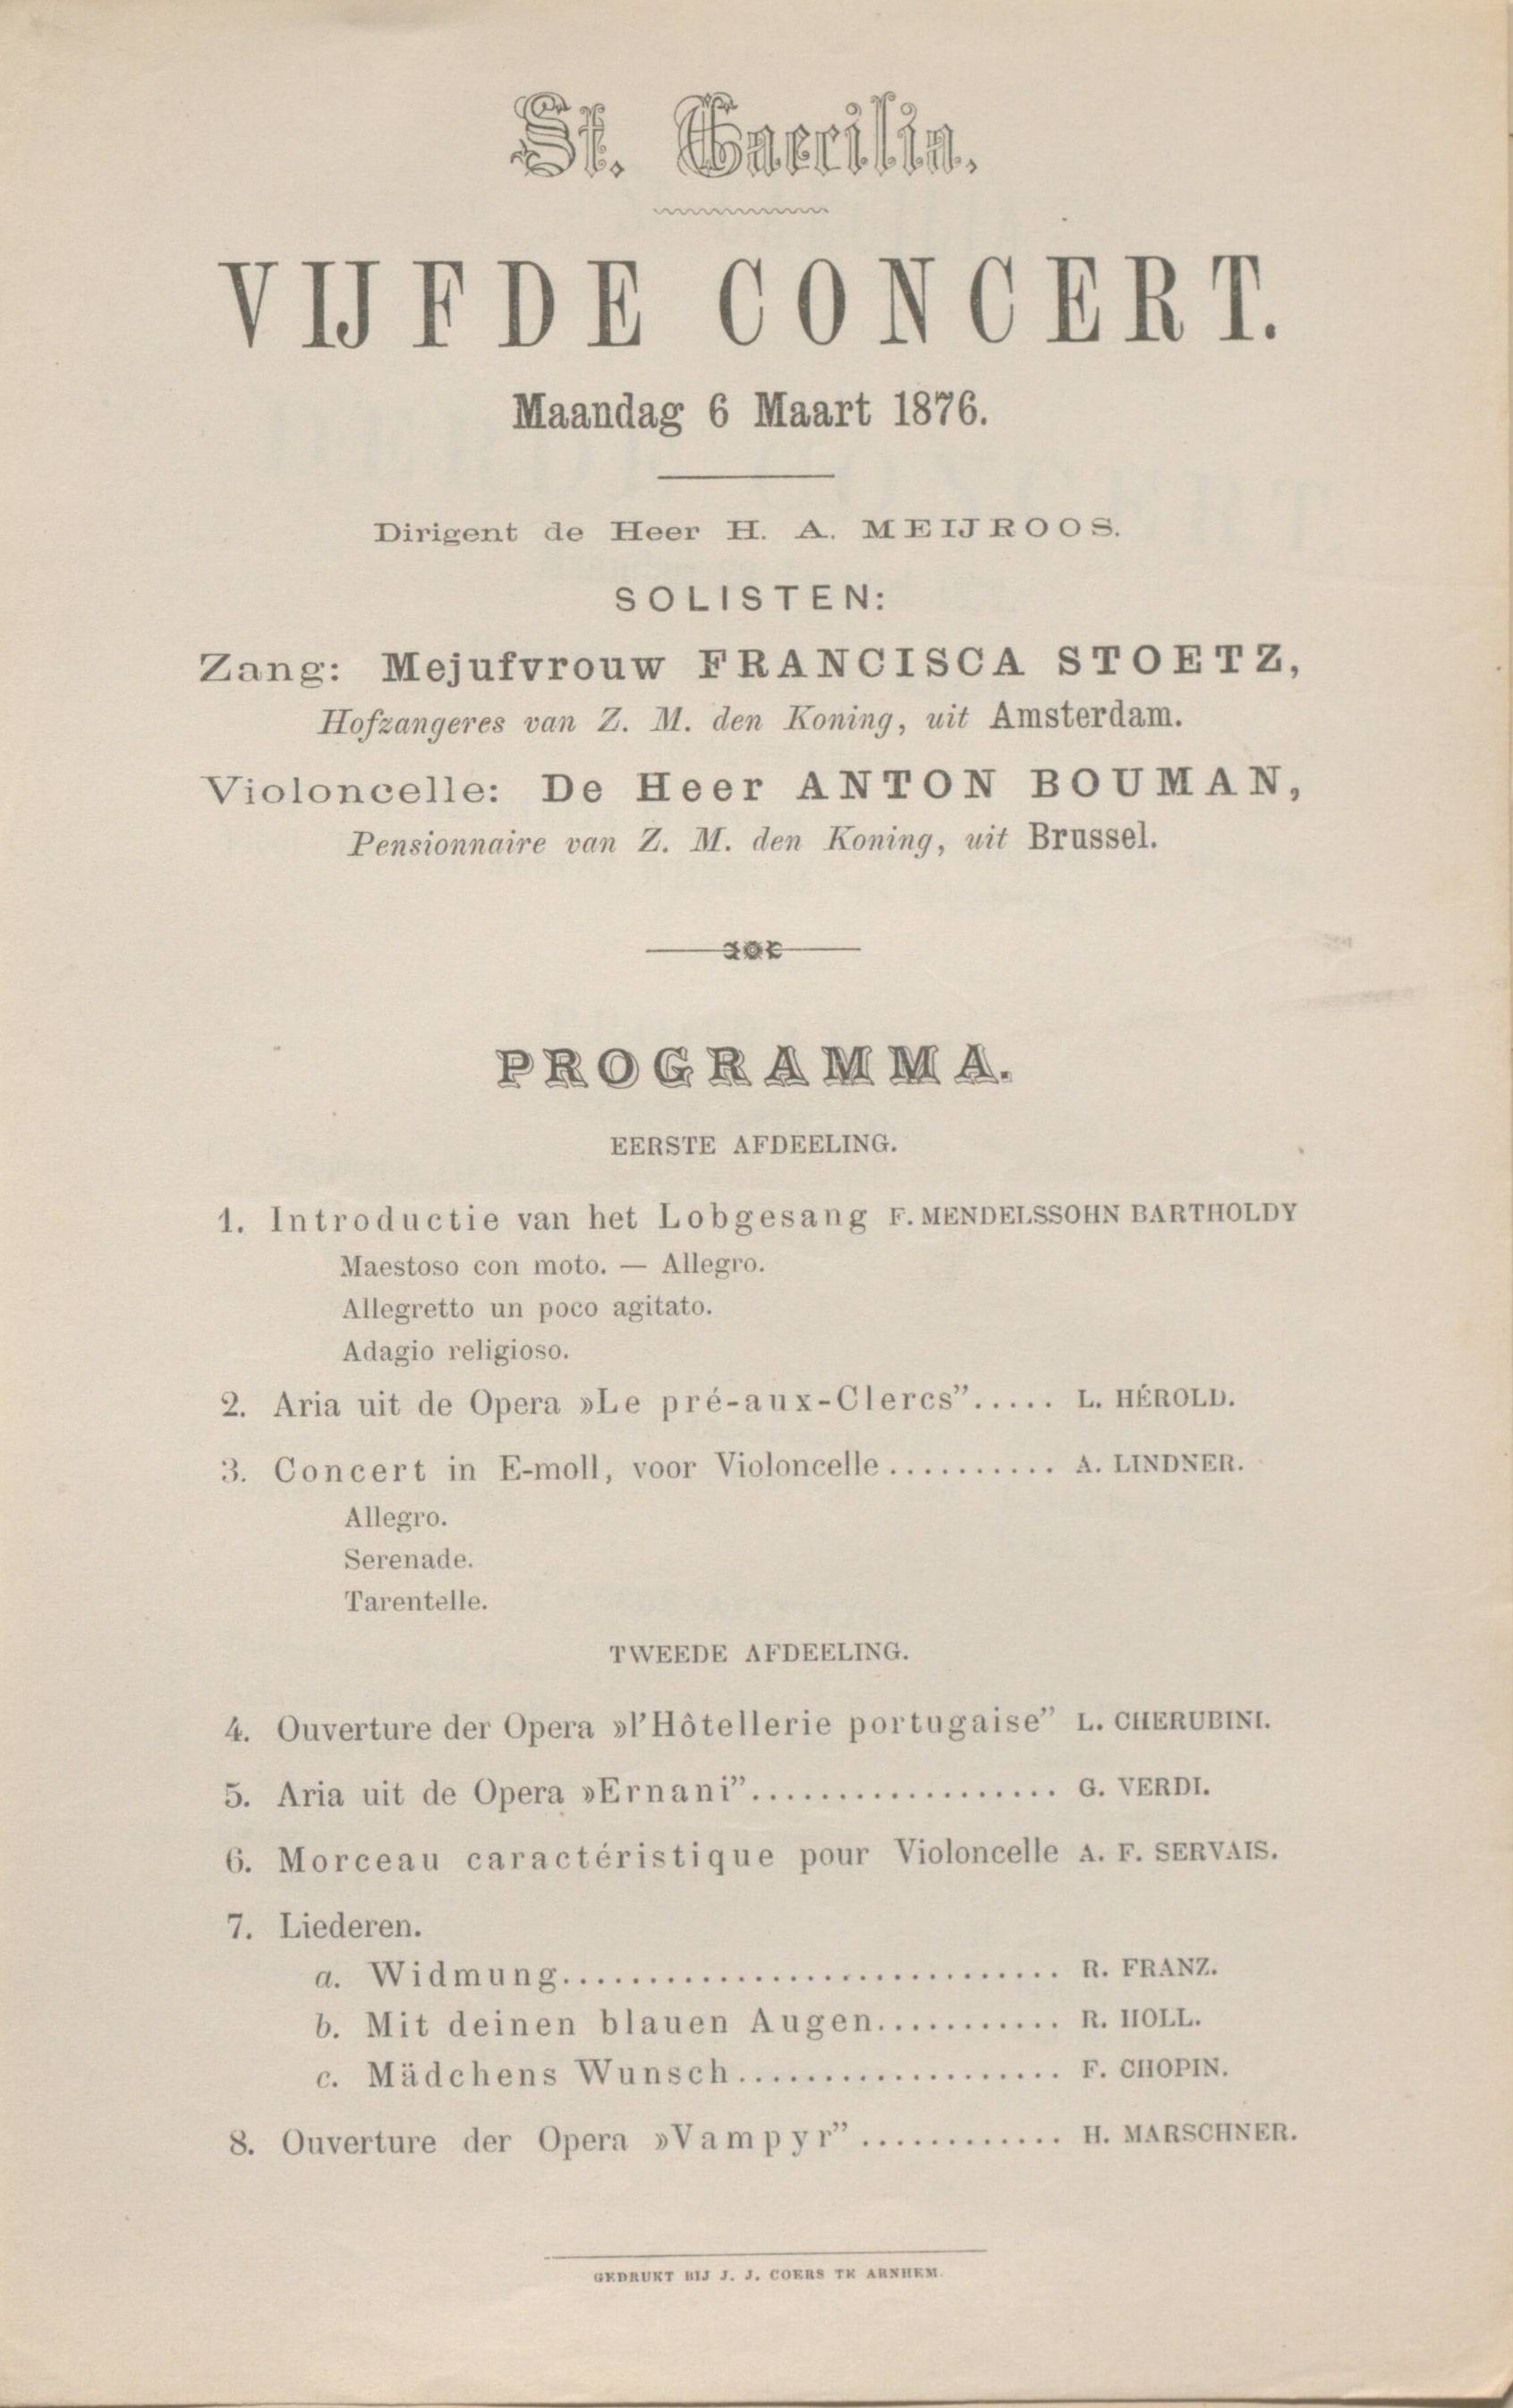 Onderdeel van een gedrukt programma van St. Caecilia uit 1876.